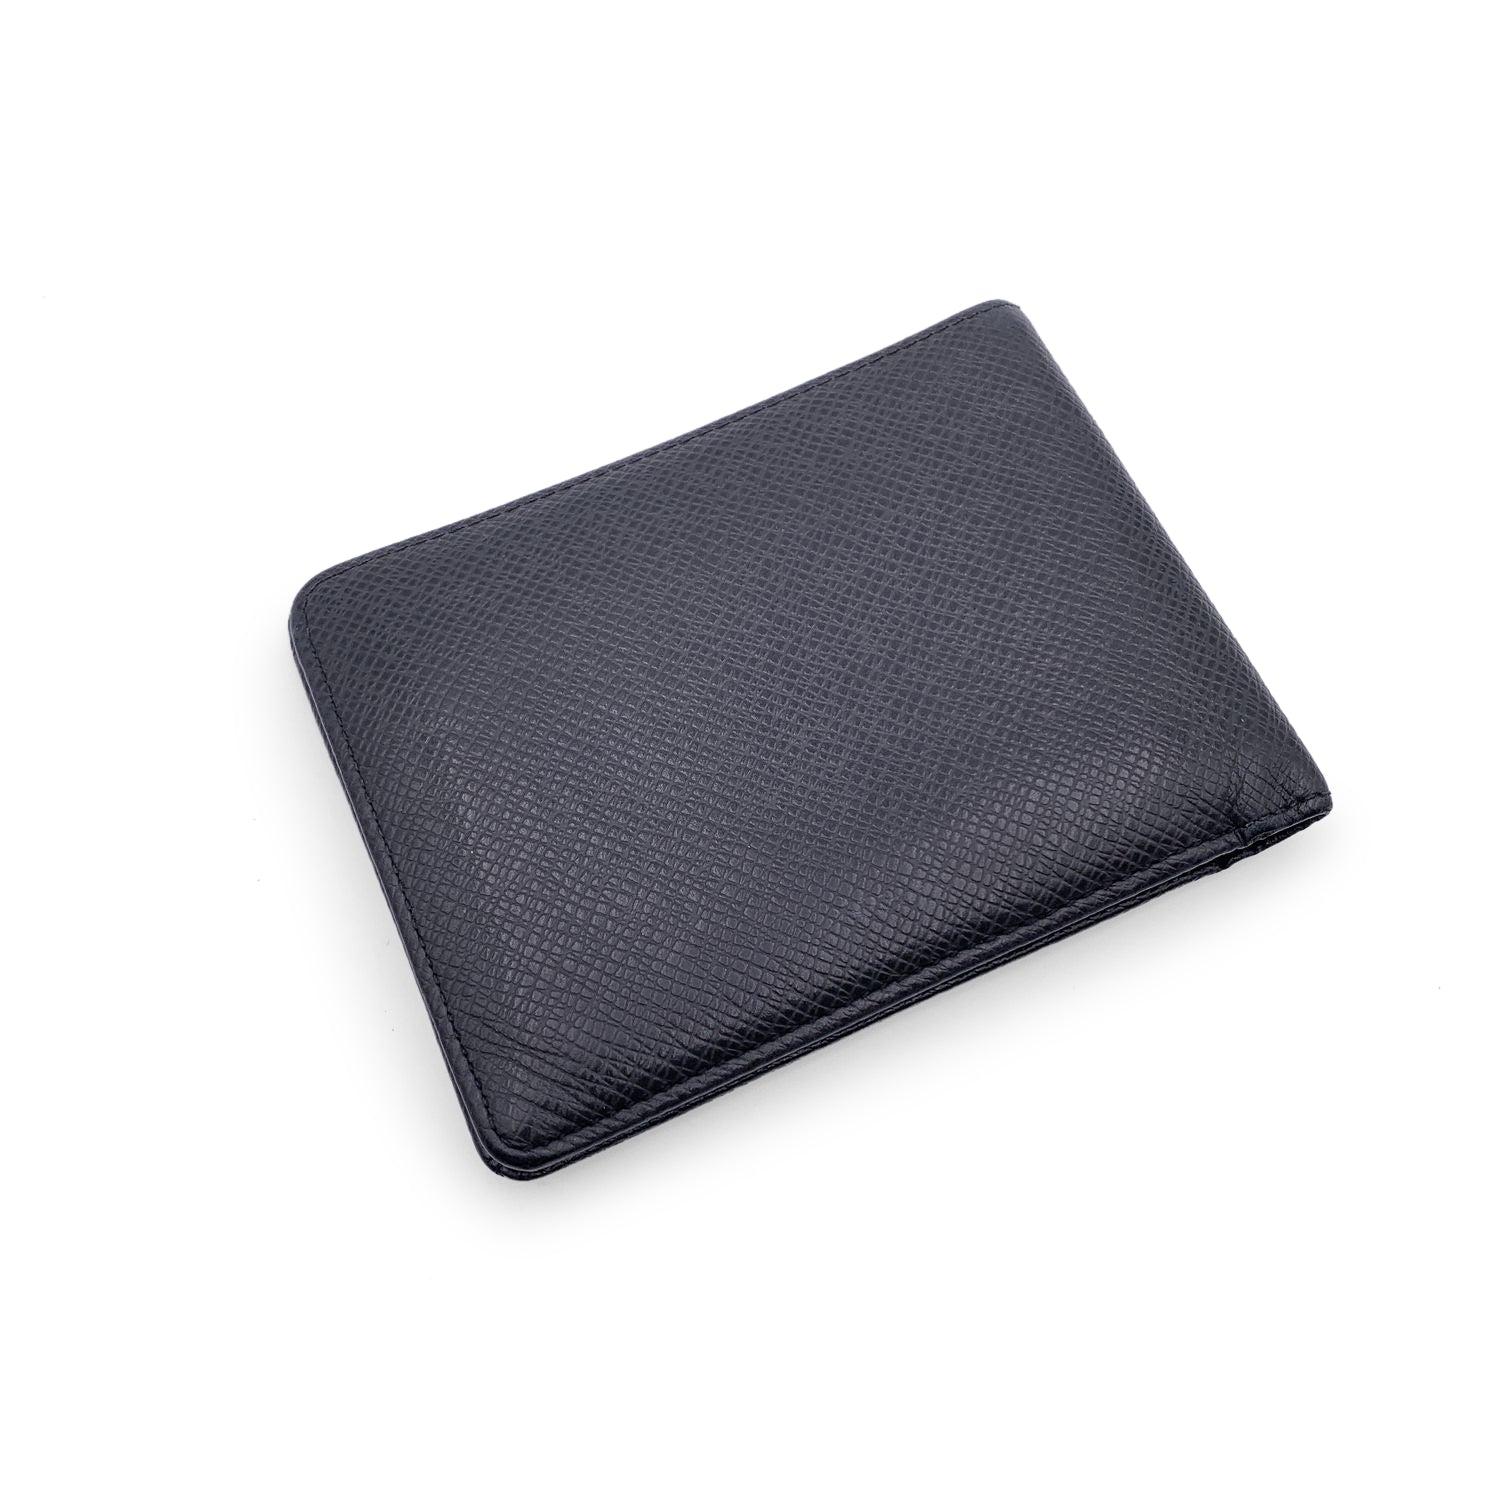 Louis Vuitton cuir noir taïga Multiple Bifold Wallet Credit Card Holder. Design/One. 2 compartiments à billets, 5 fentes pour cartes de crédit et 2 poches ouvertes à l'intérieur. Doublure en cuir. Intérieur embossé 'LOUIS VUITTON Paris - made in